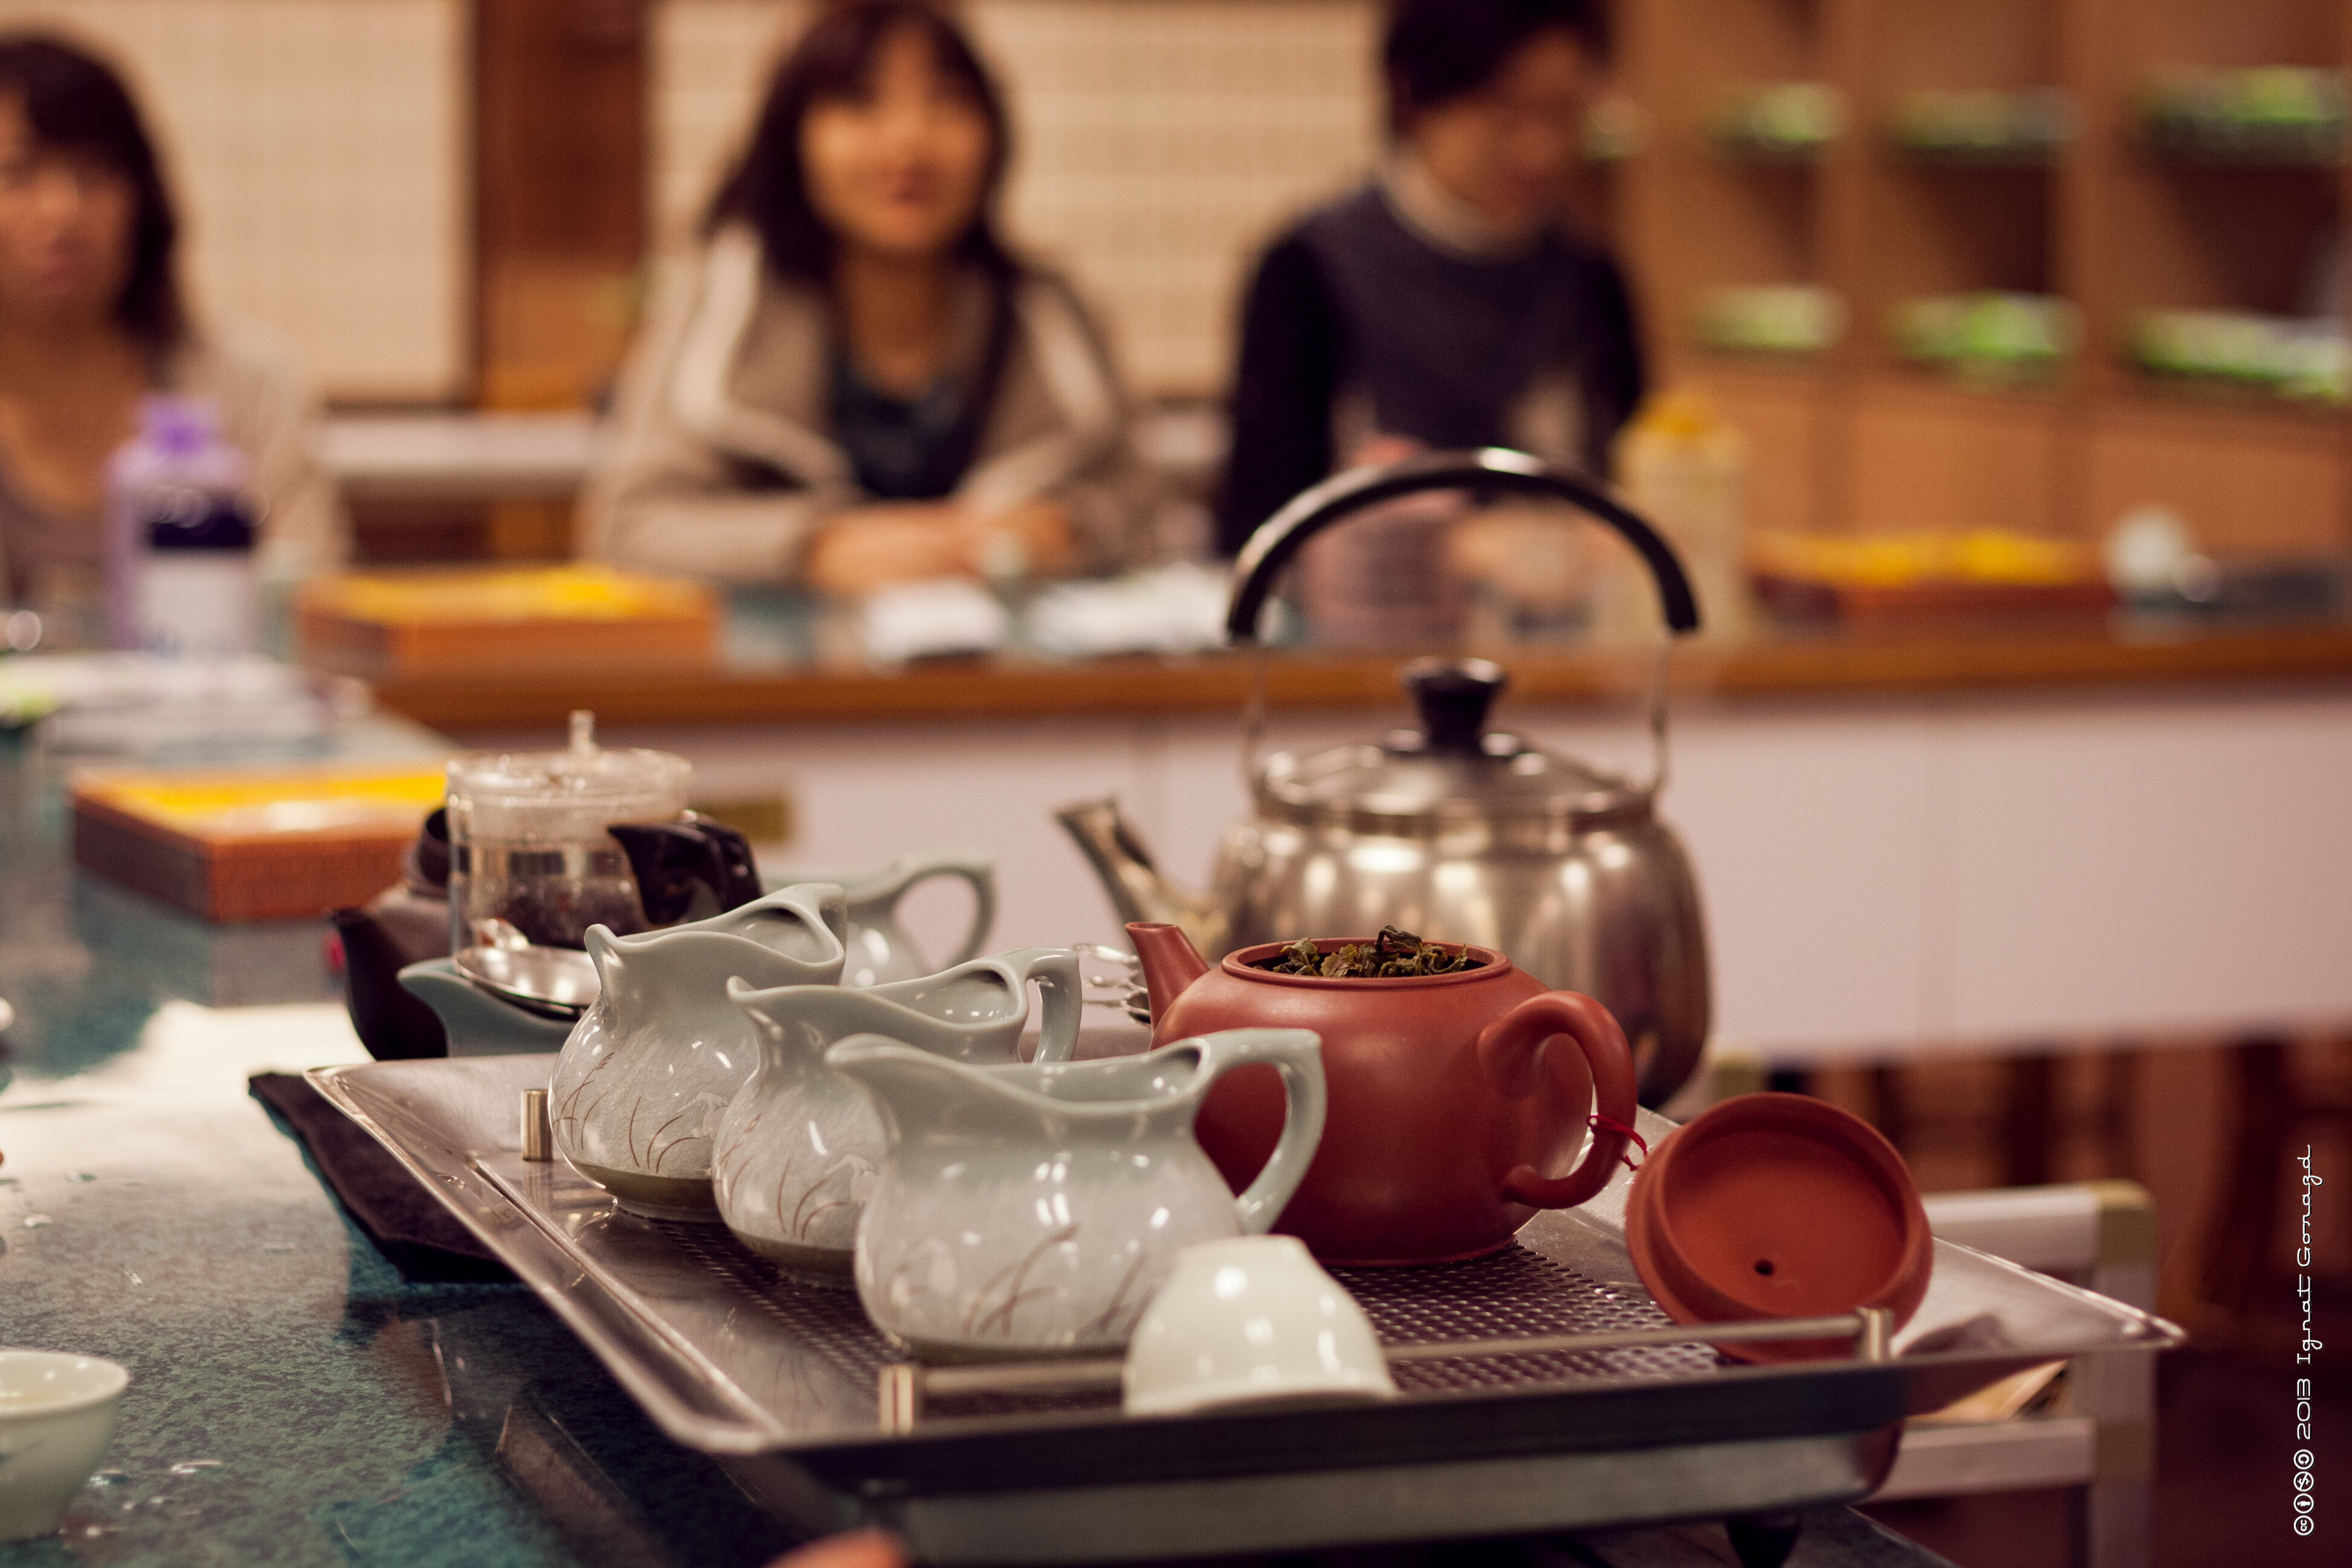 В каждом китайском городе есть чайные
лавки или магазинчики, где вам с удовольствием устроят дегустационное чаепитие и
подскажут, какой сорт чая выбрать.